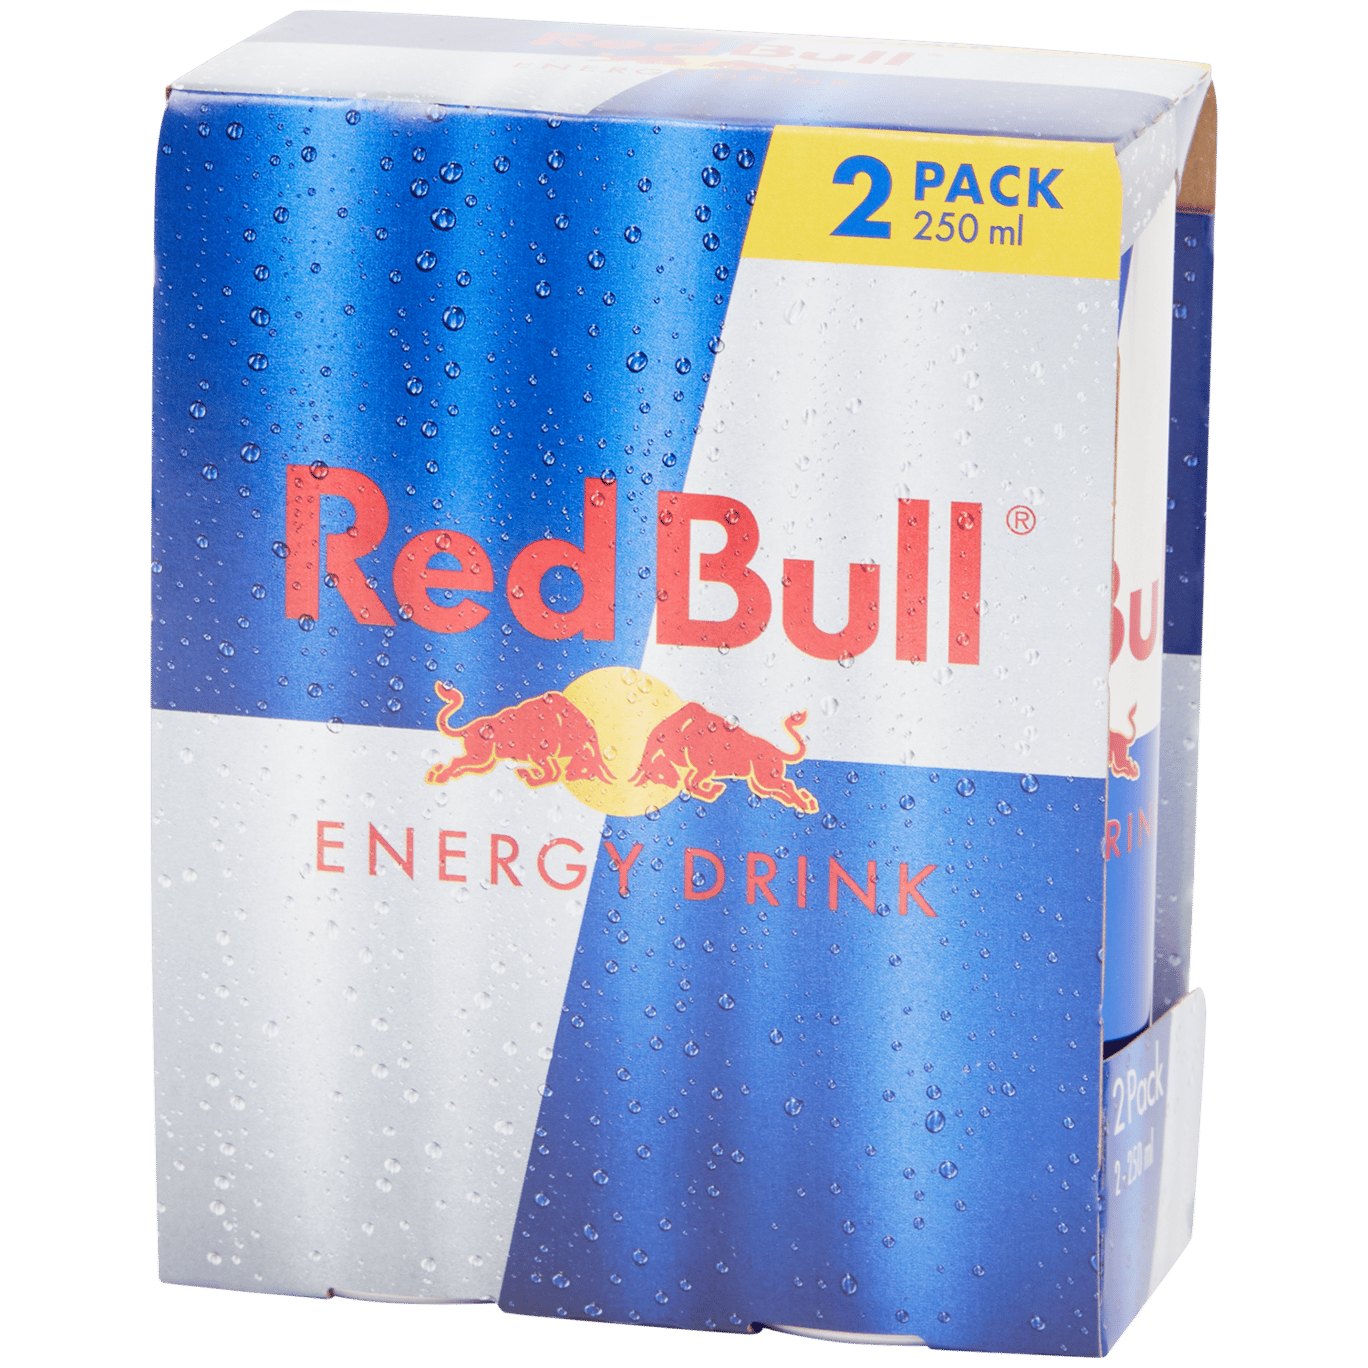 Red Bull energydrink